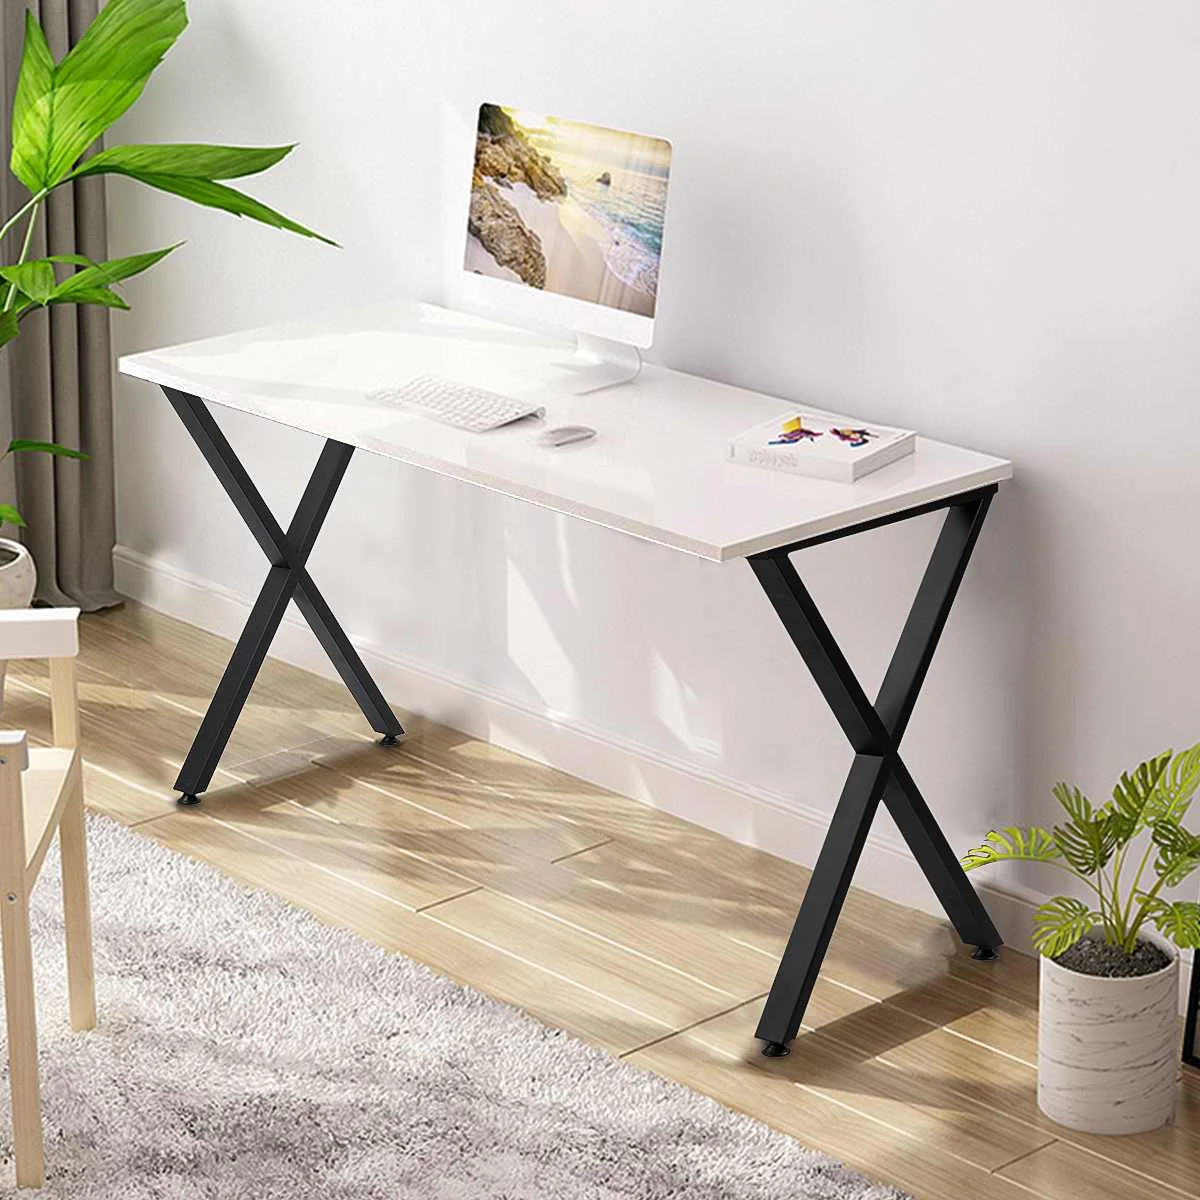 1 paio di gambe staccabili per tavolo da scrivania piedini per mobili gambe  per mobili accessori per mobili in metallo accessori stile nordico patas  para mueble